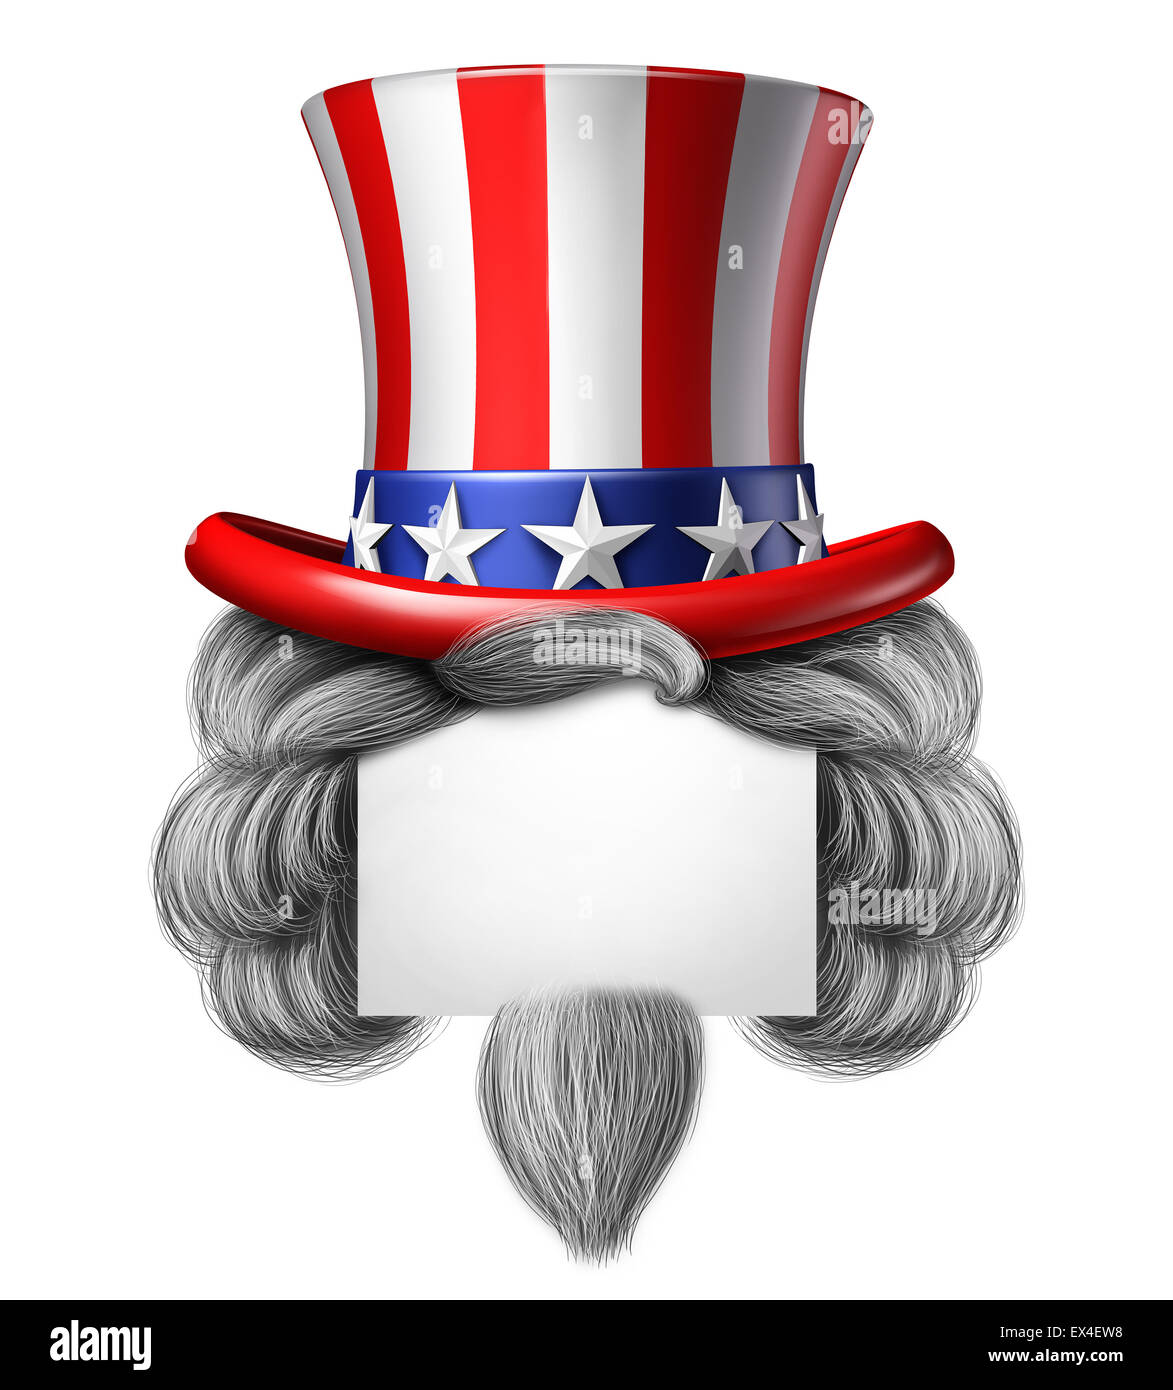 American hat signe avec copie espace en tant que stars and stripes avec cheveux symbole sur un fond blanc comme un concept de fierté et de patriotisme en Amérique et la célébration de l'indépendance et le 4 juillet prochain pour les États-Unis. Banque D'Images